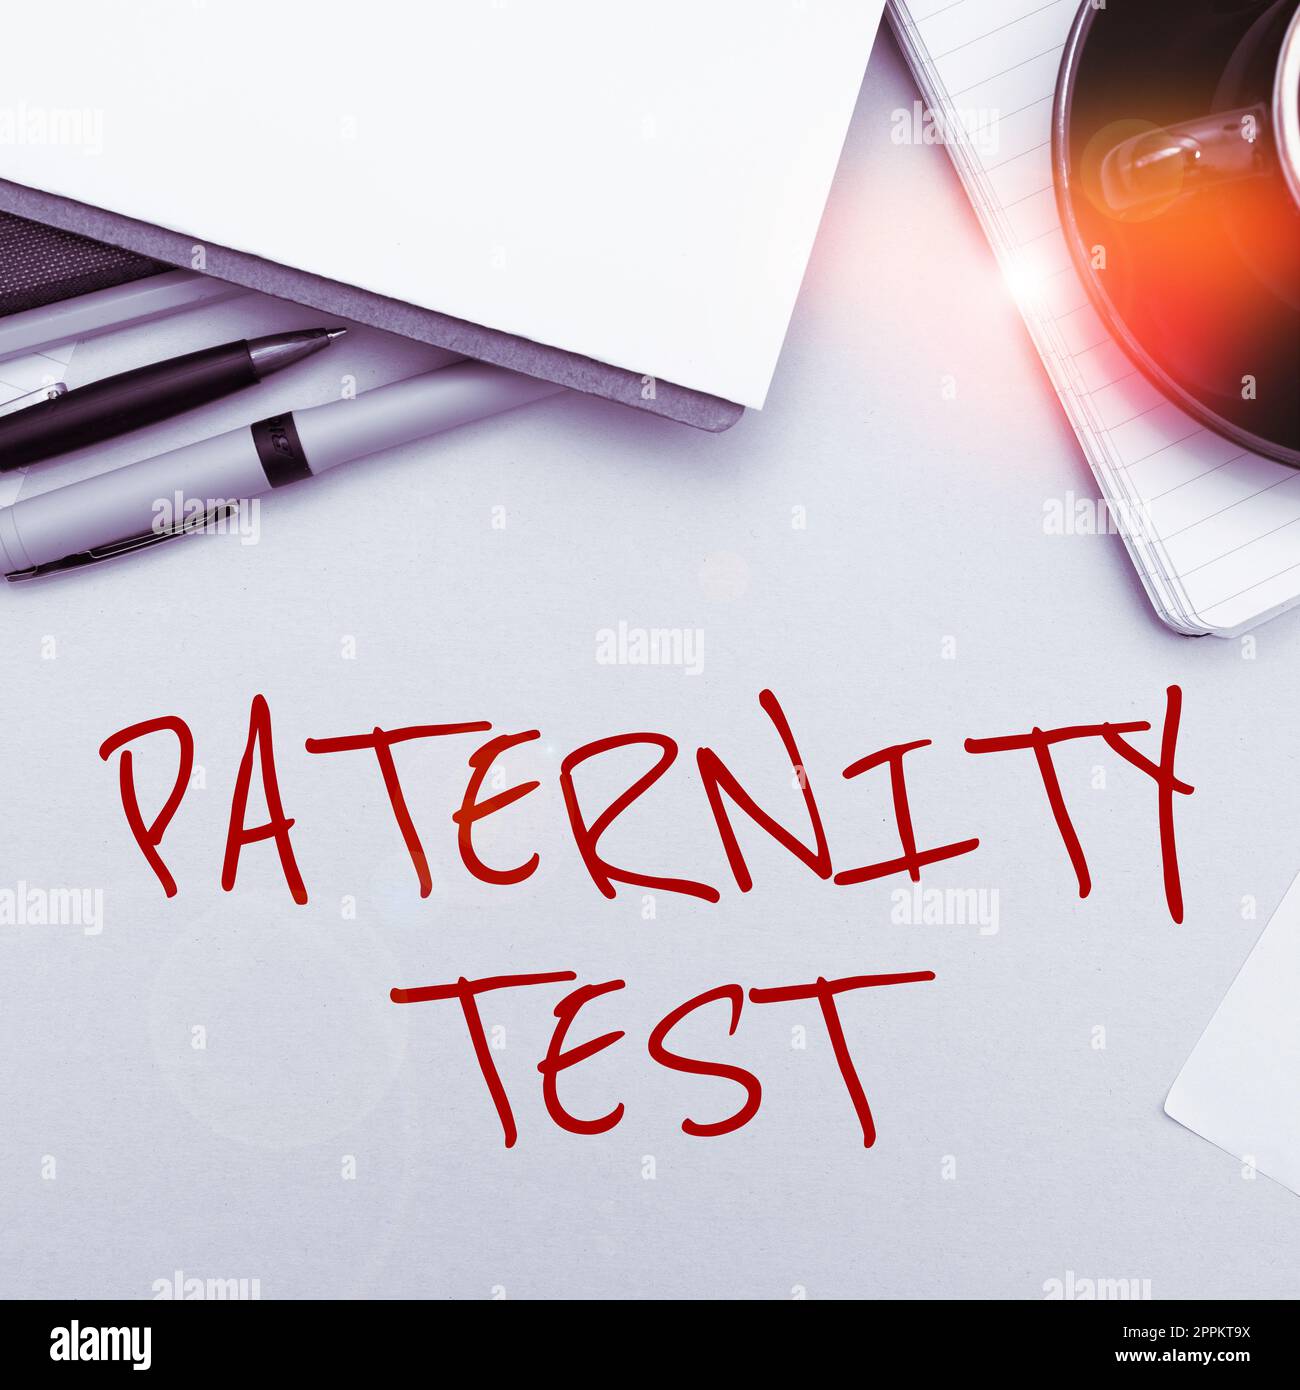 Handschriftlicher Text Vaterschaftstest. Konzeptfoto ein DNA-Test, um festzustellen, ob ein bestimmter Mann der biologische Vater ist Stockfoto